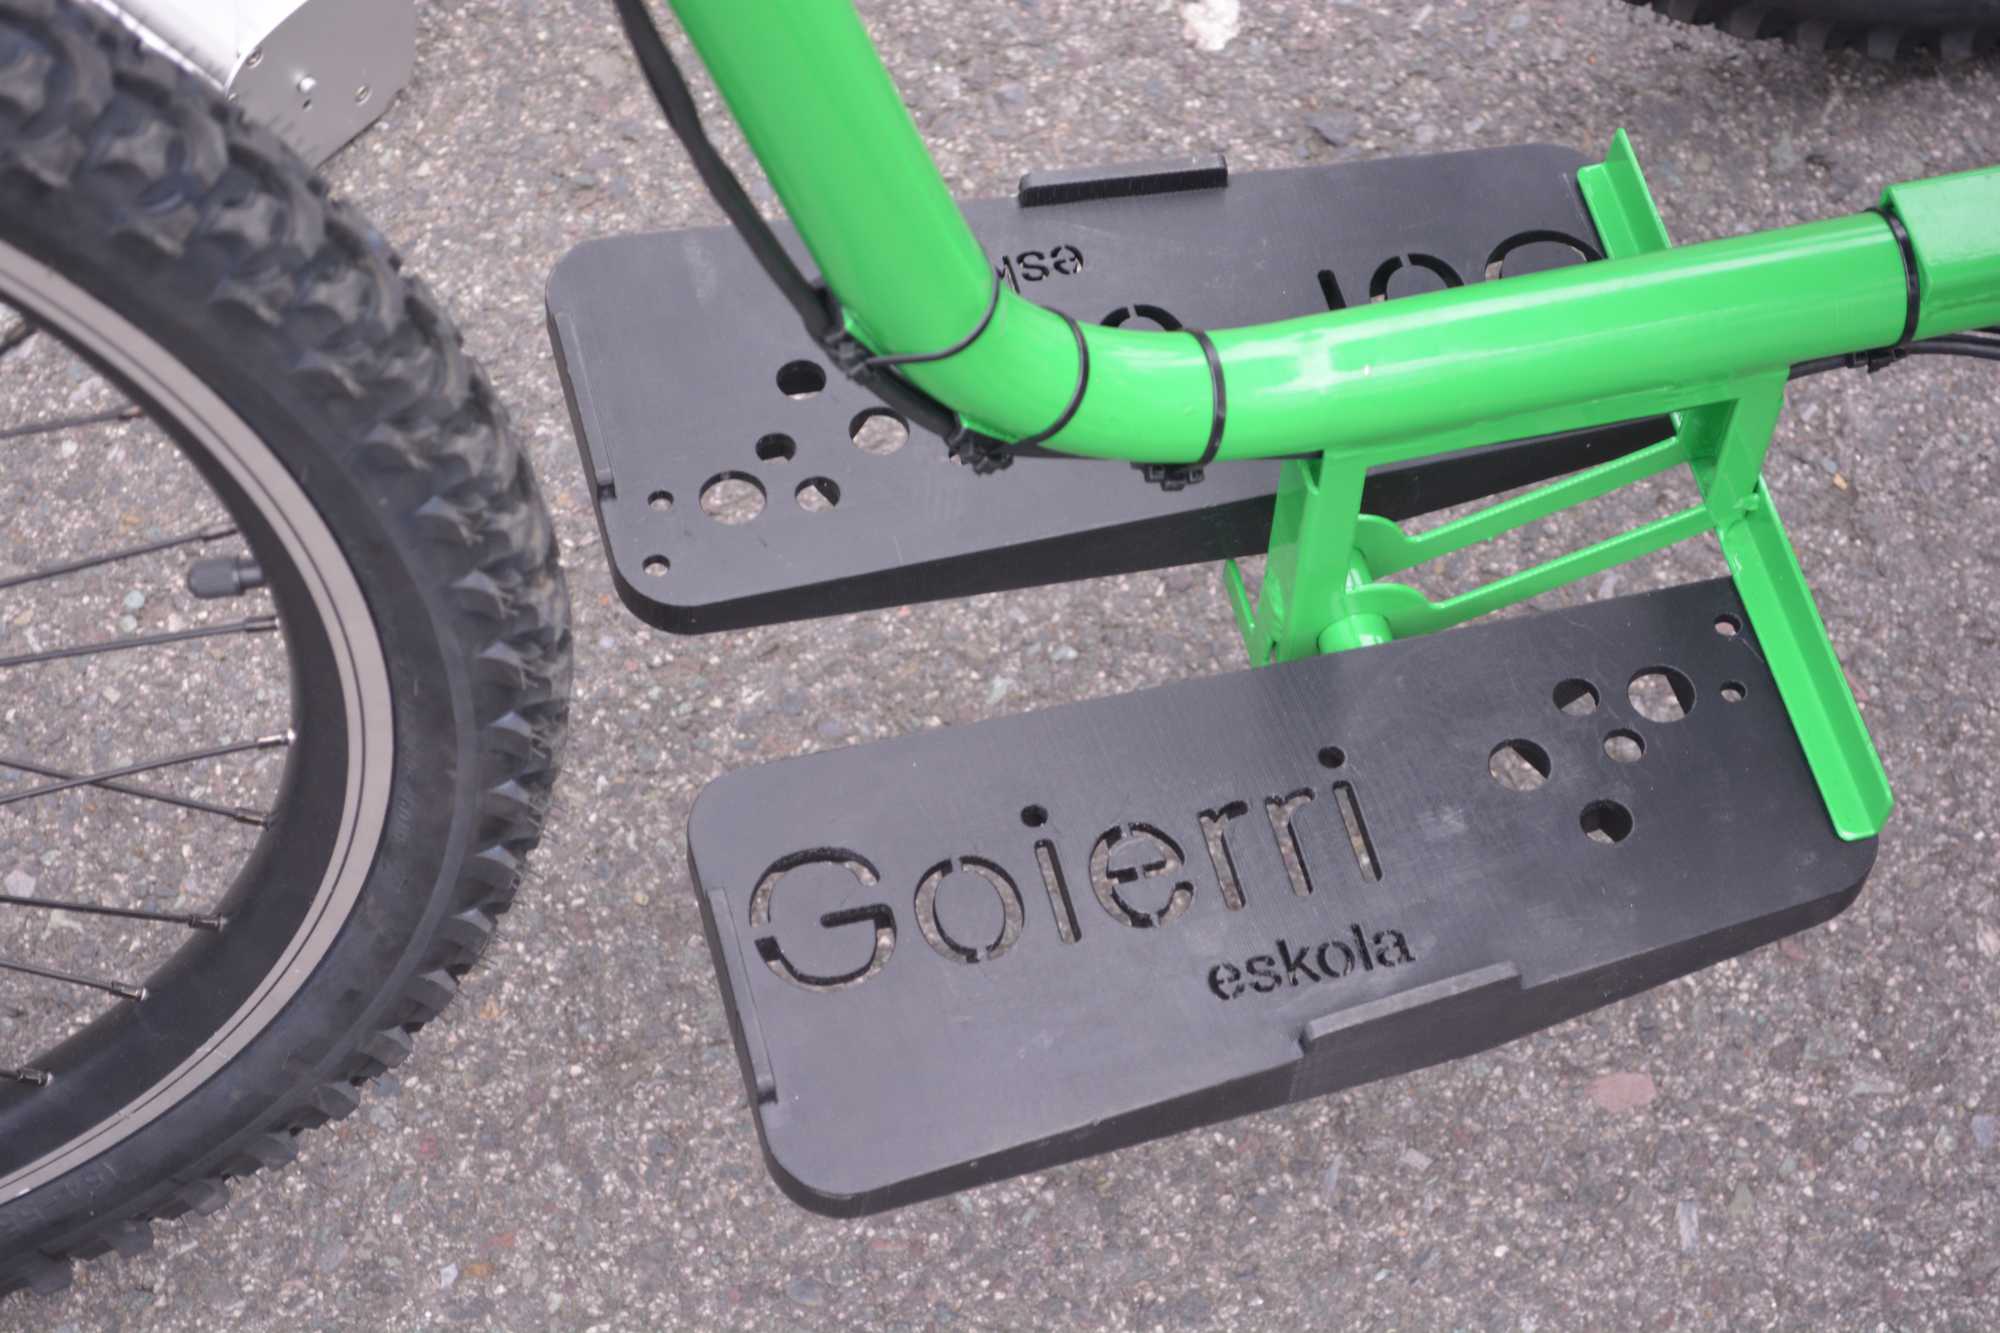 pedales de la bicicleta fabricada por Goierri Eskola para la ONG Kellesensa